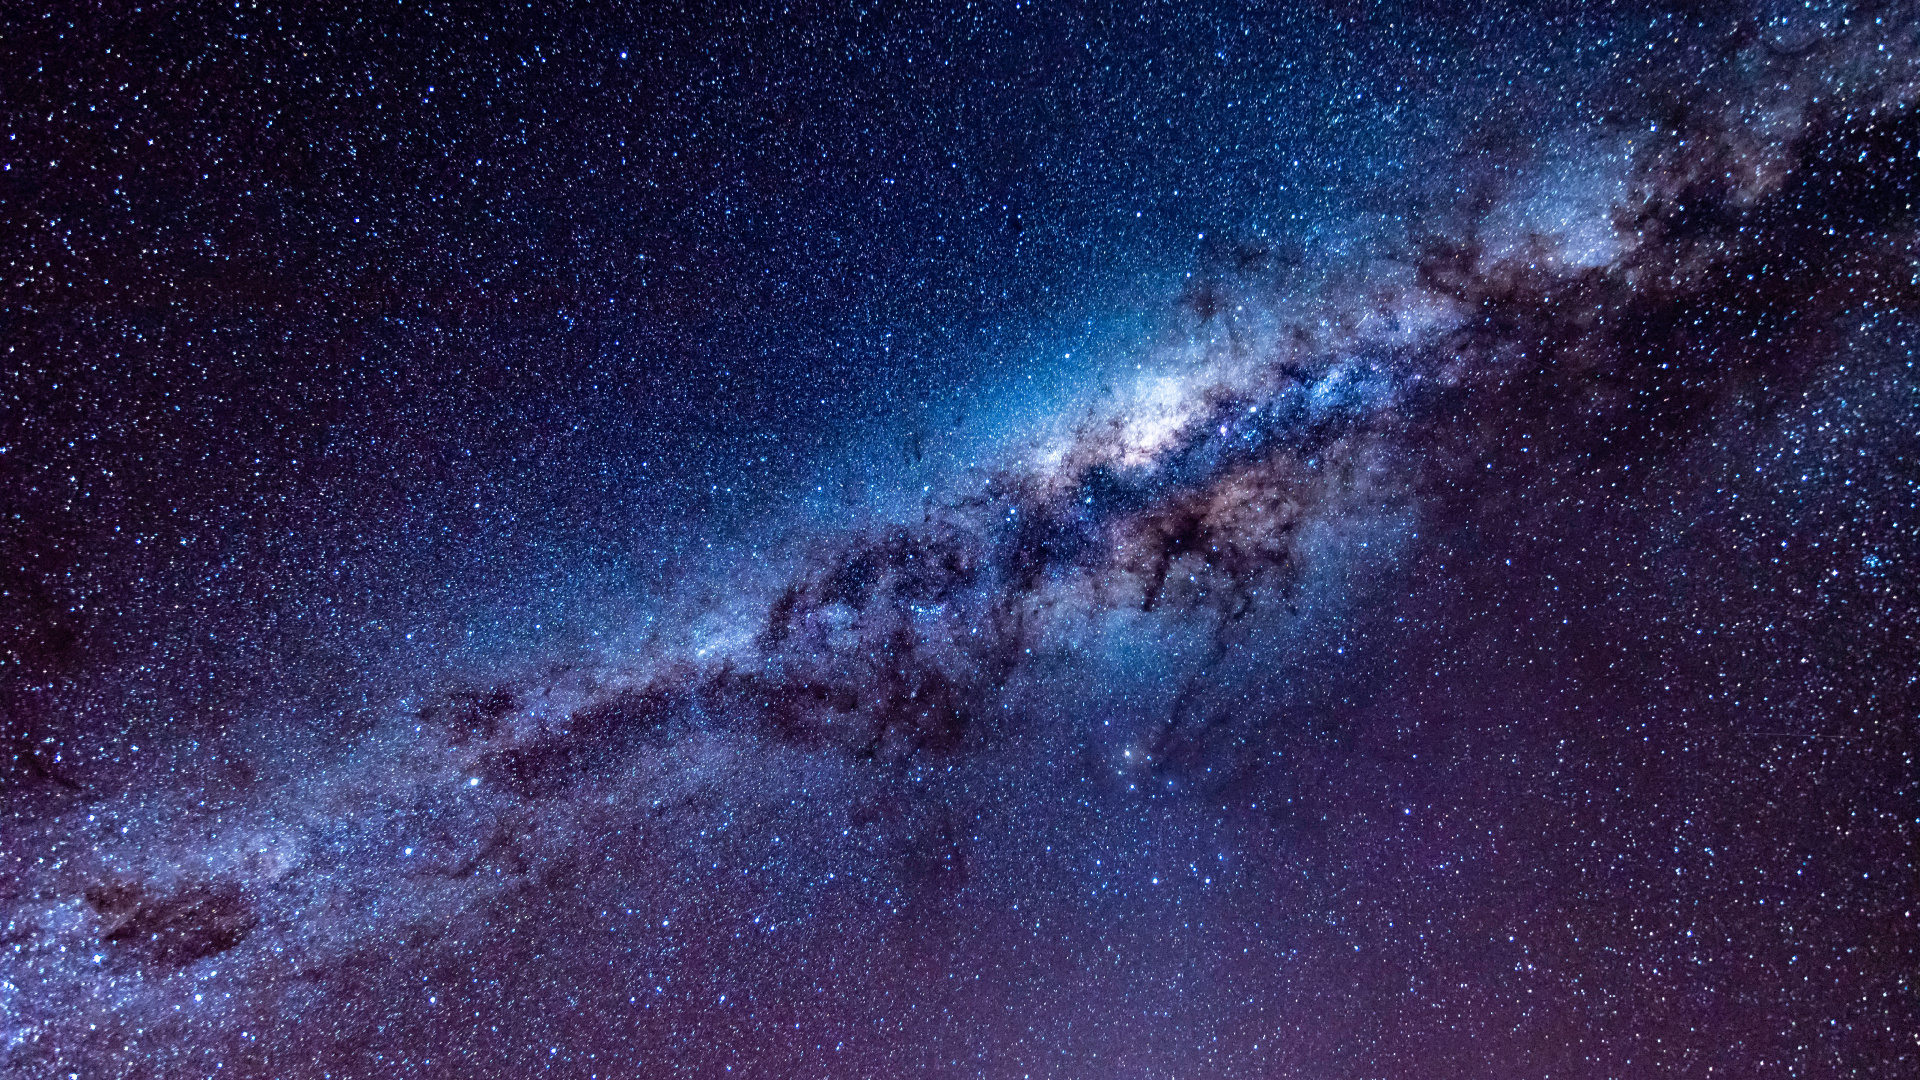 银河系, 天文学, 宇宙, 明星, 夜晚的天空 壁纸 1920x1080 允许